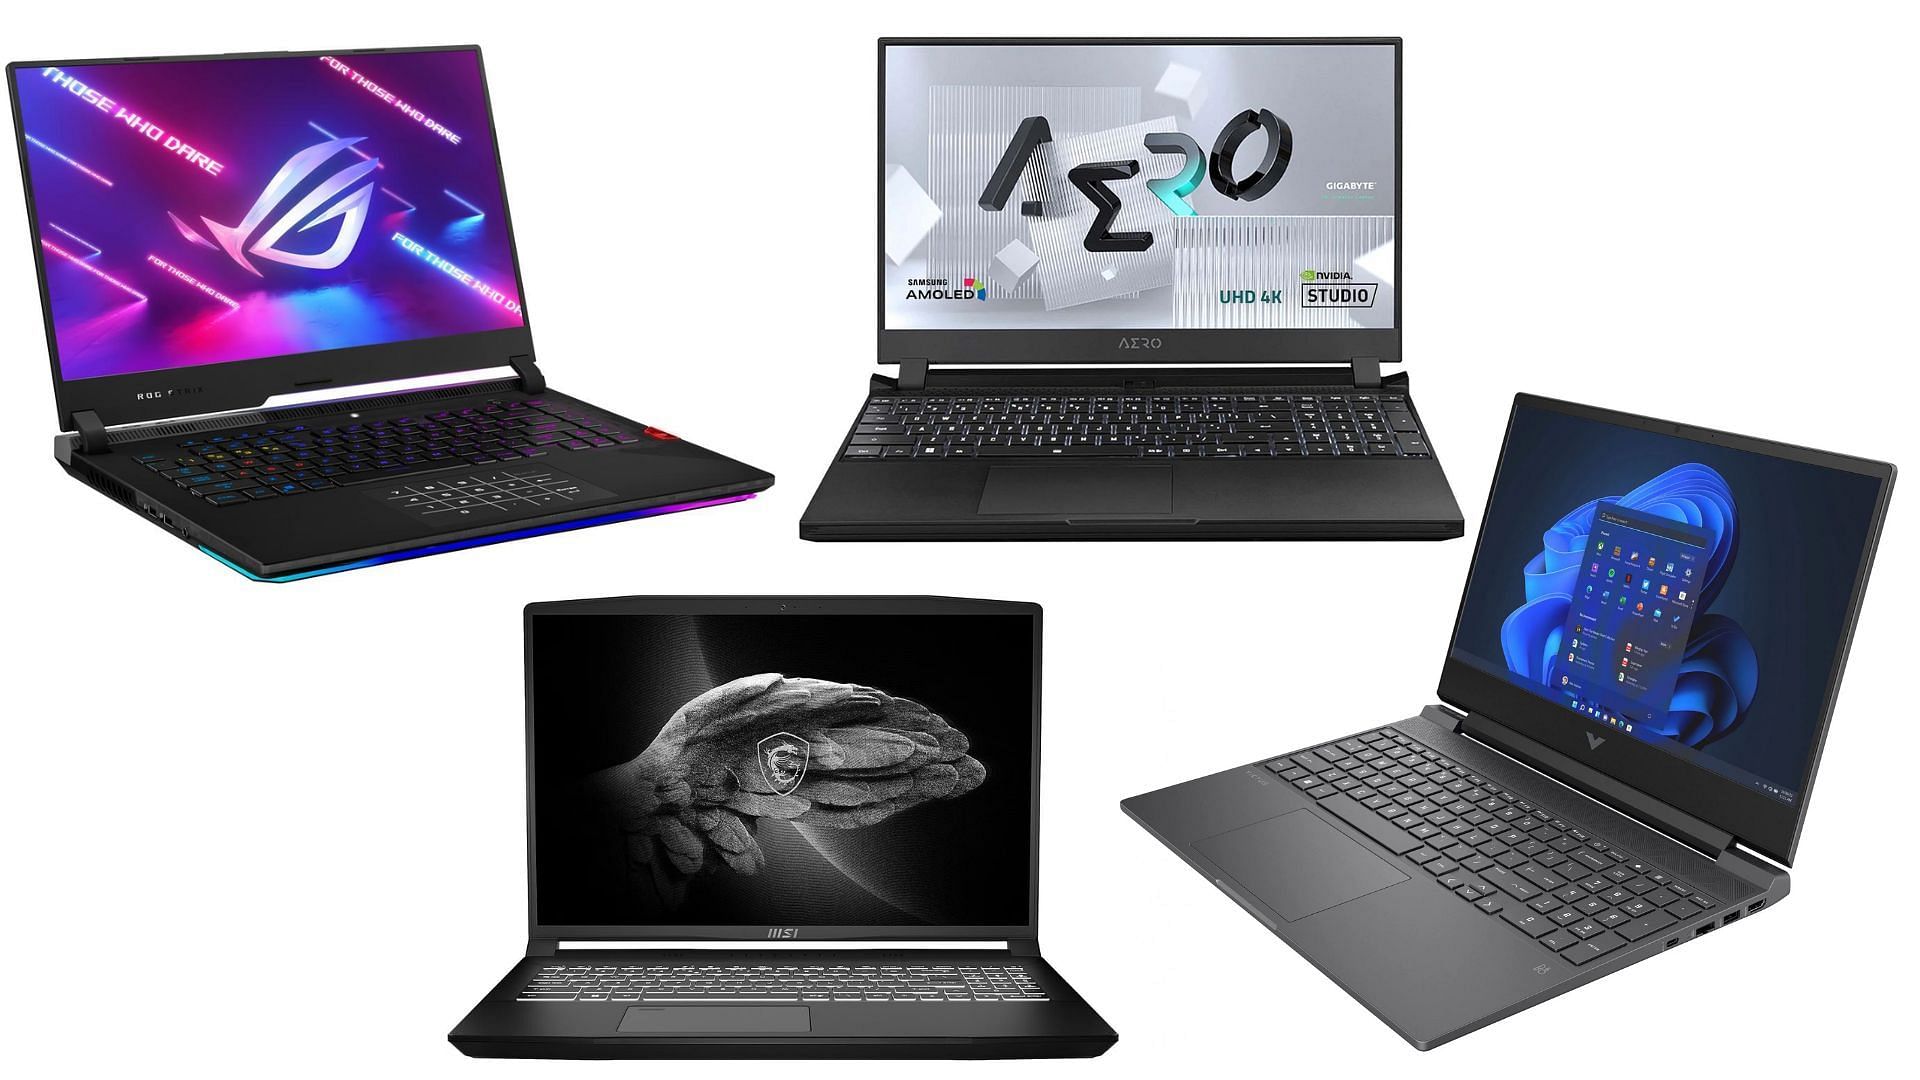 Multiple laptops are on sale this Black Friday (Image via Sportskeeda)